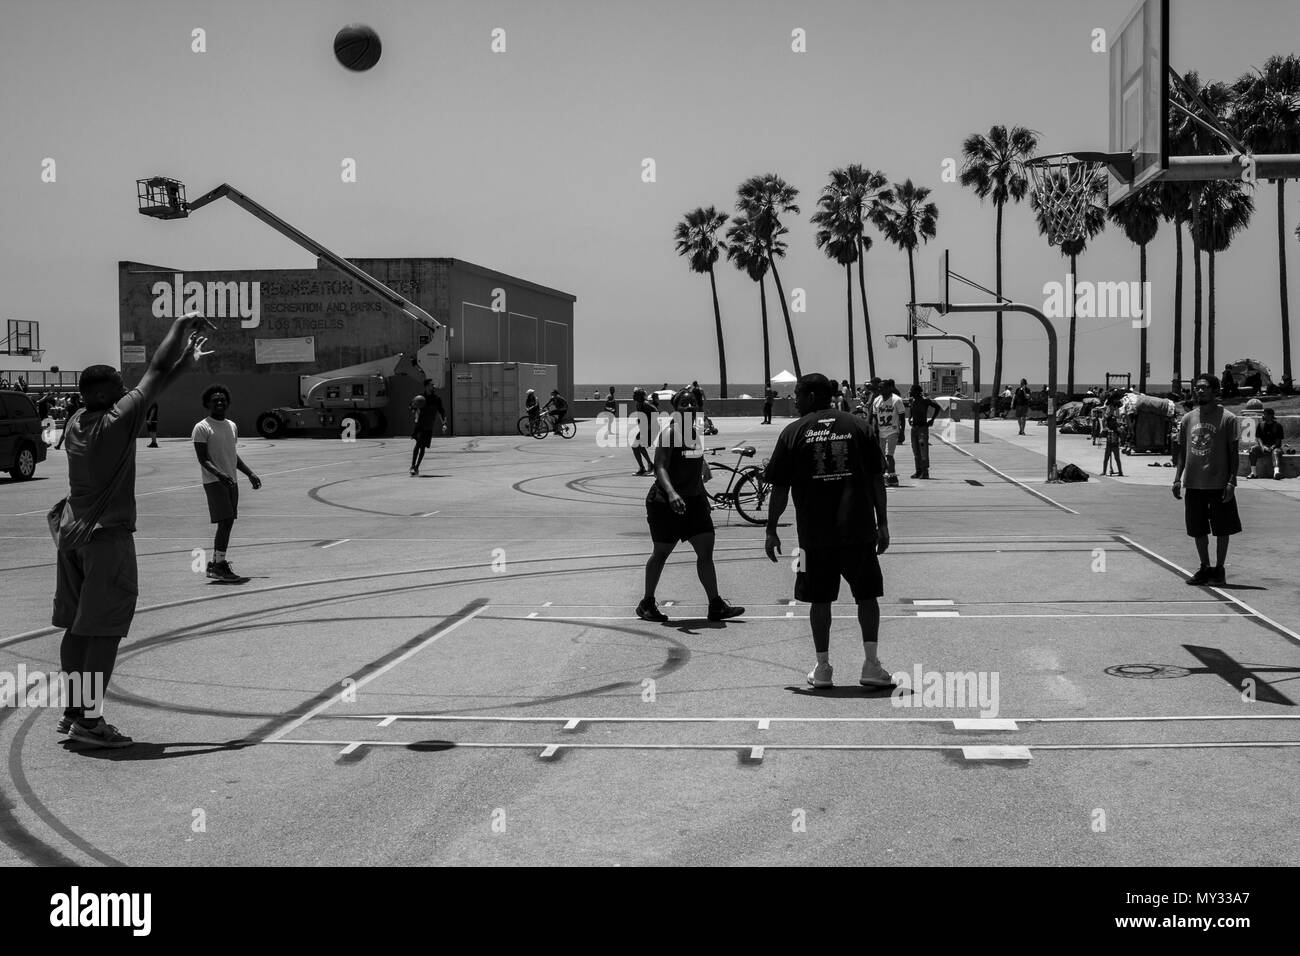 Basketball on Venice Beach Stock Photo